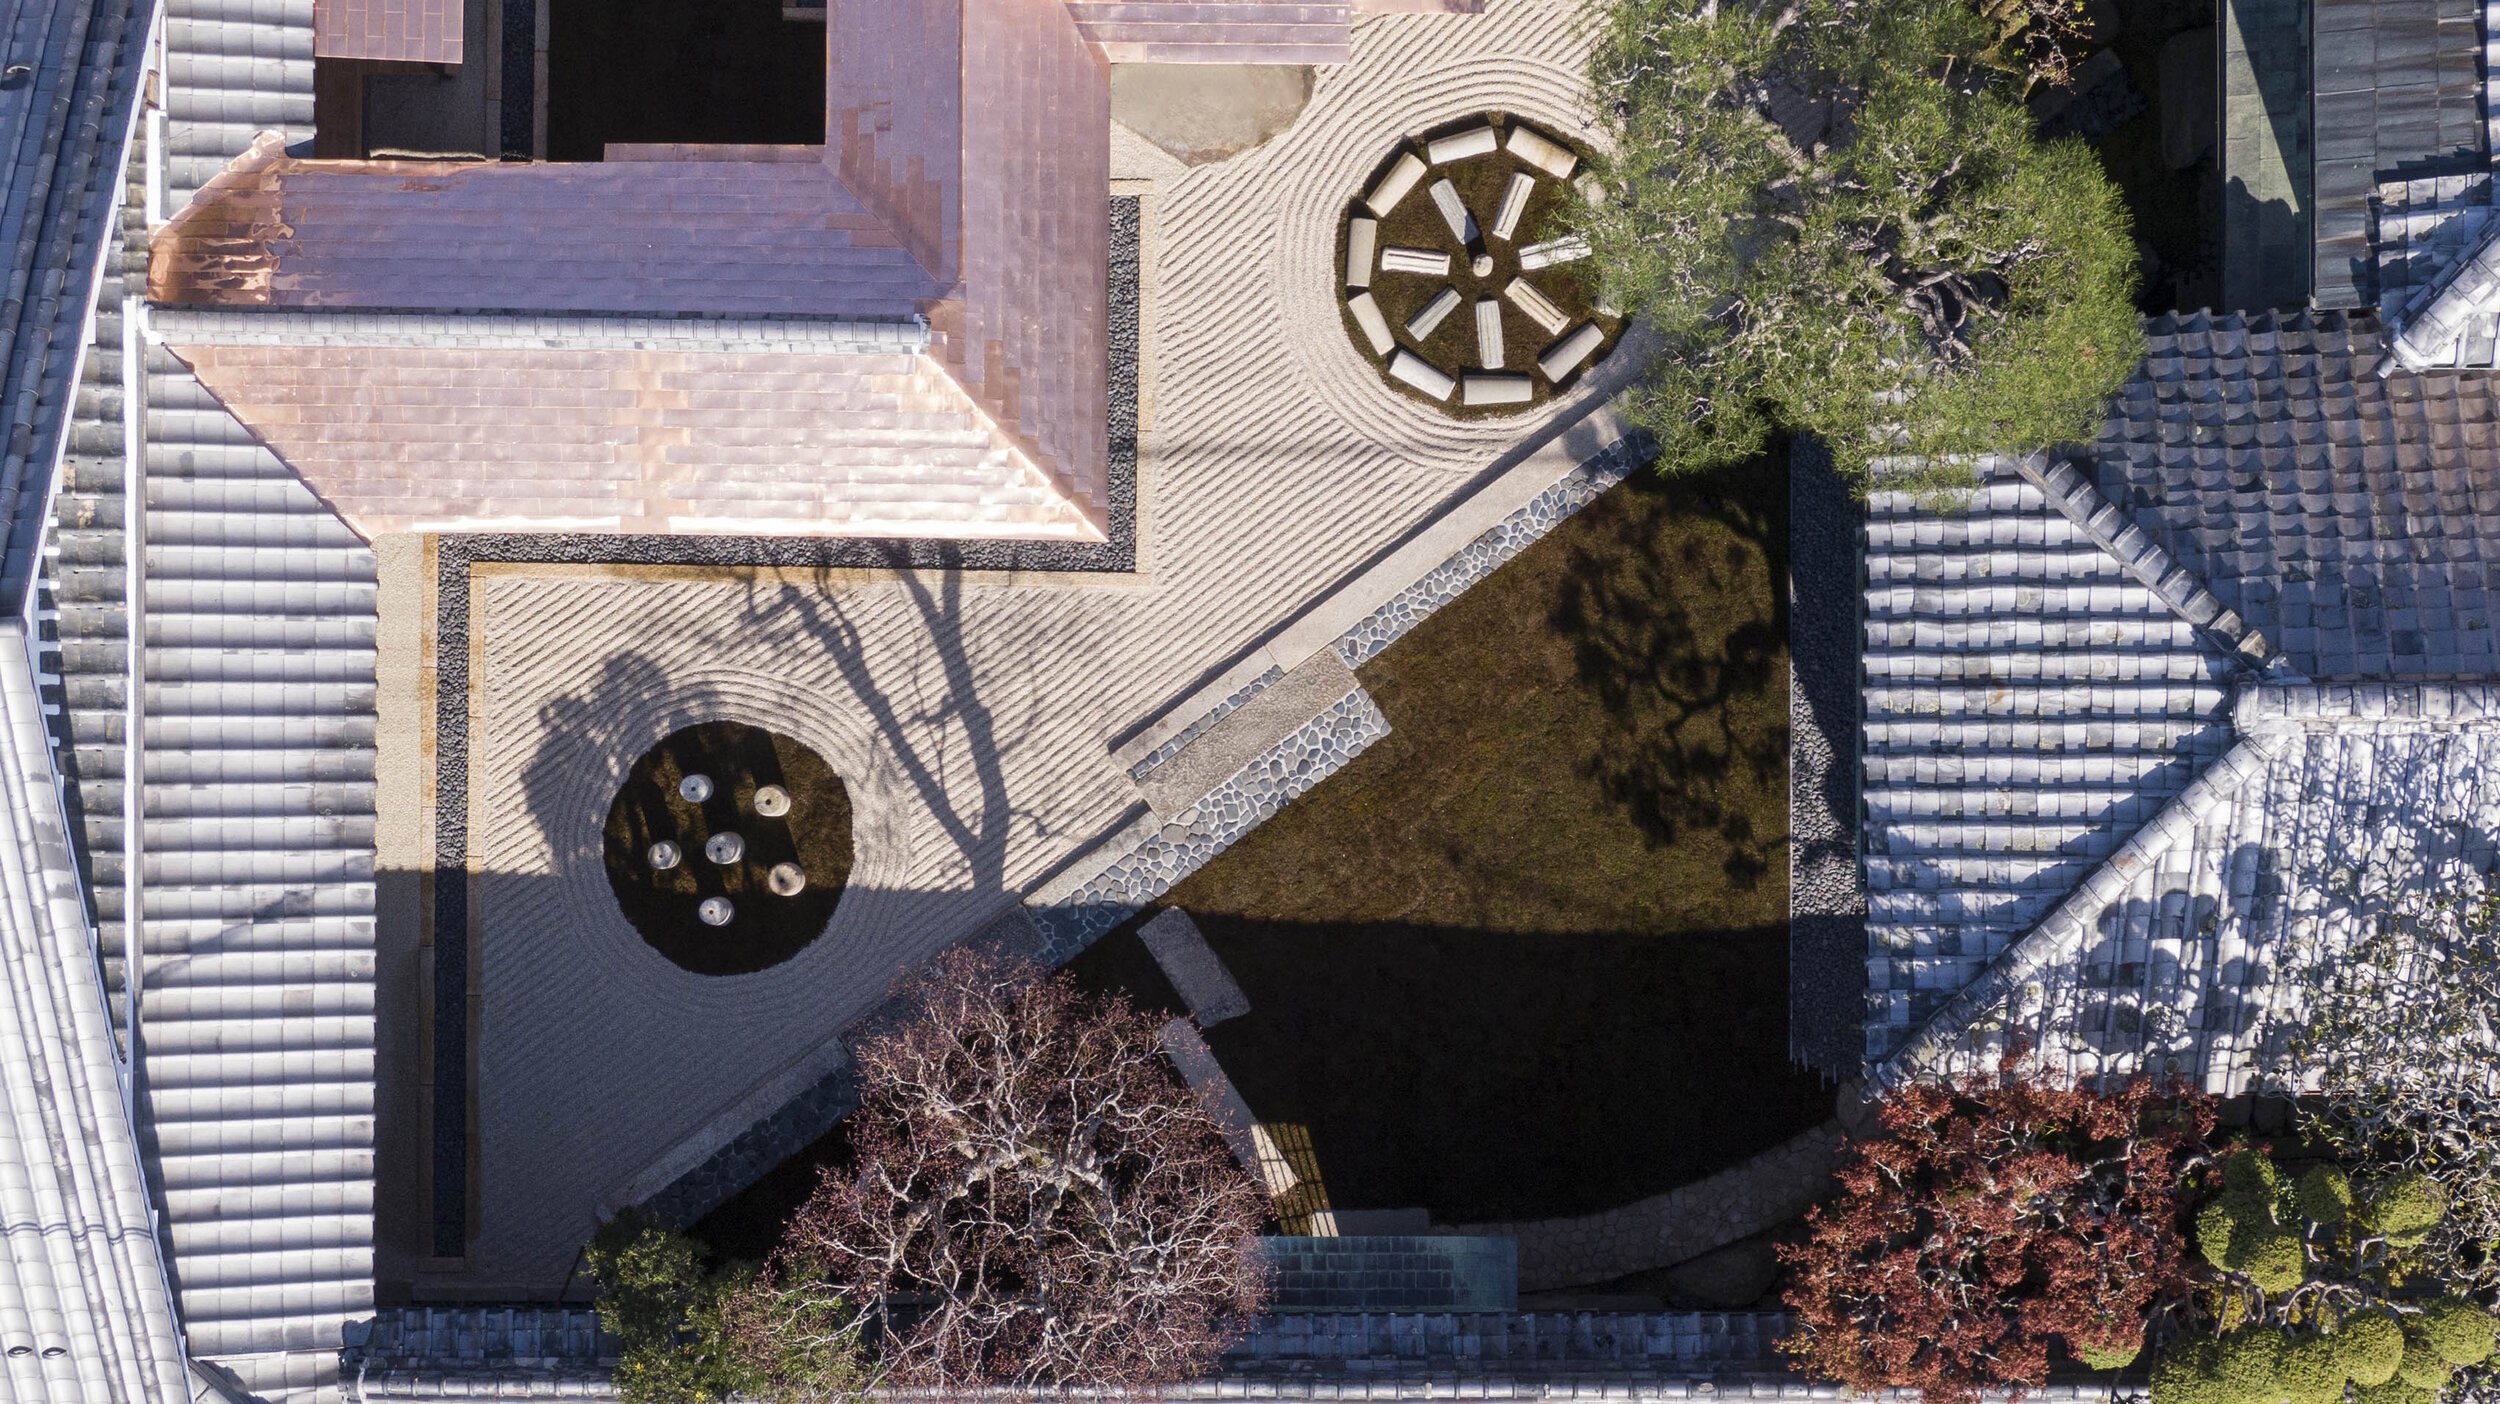  杉本博司と榊田倫之が率いる新素材研究所がデザインを手掛けた小田垣商店本店の庭園を上空から見る 